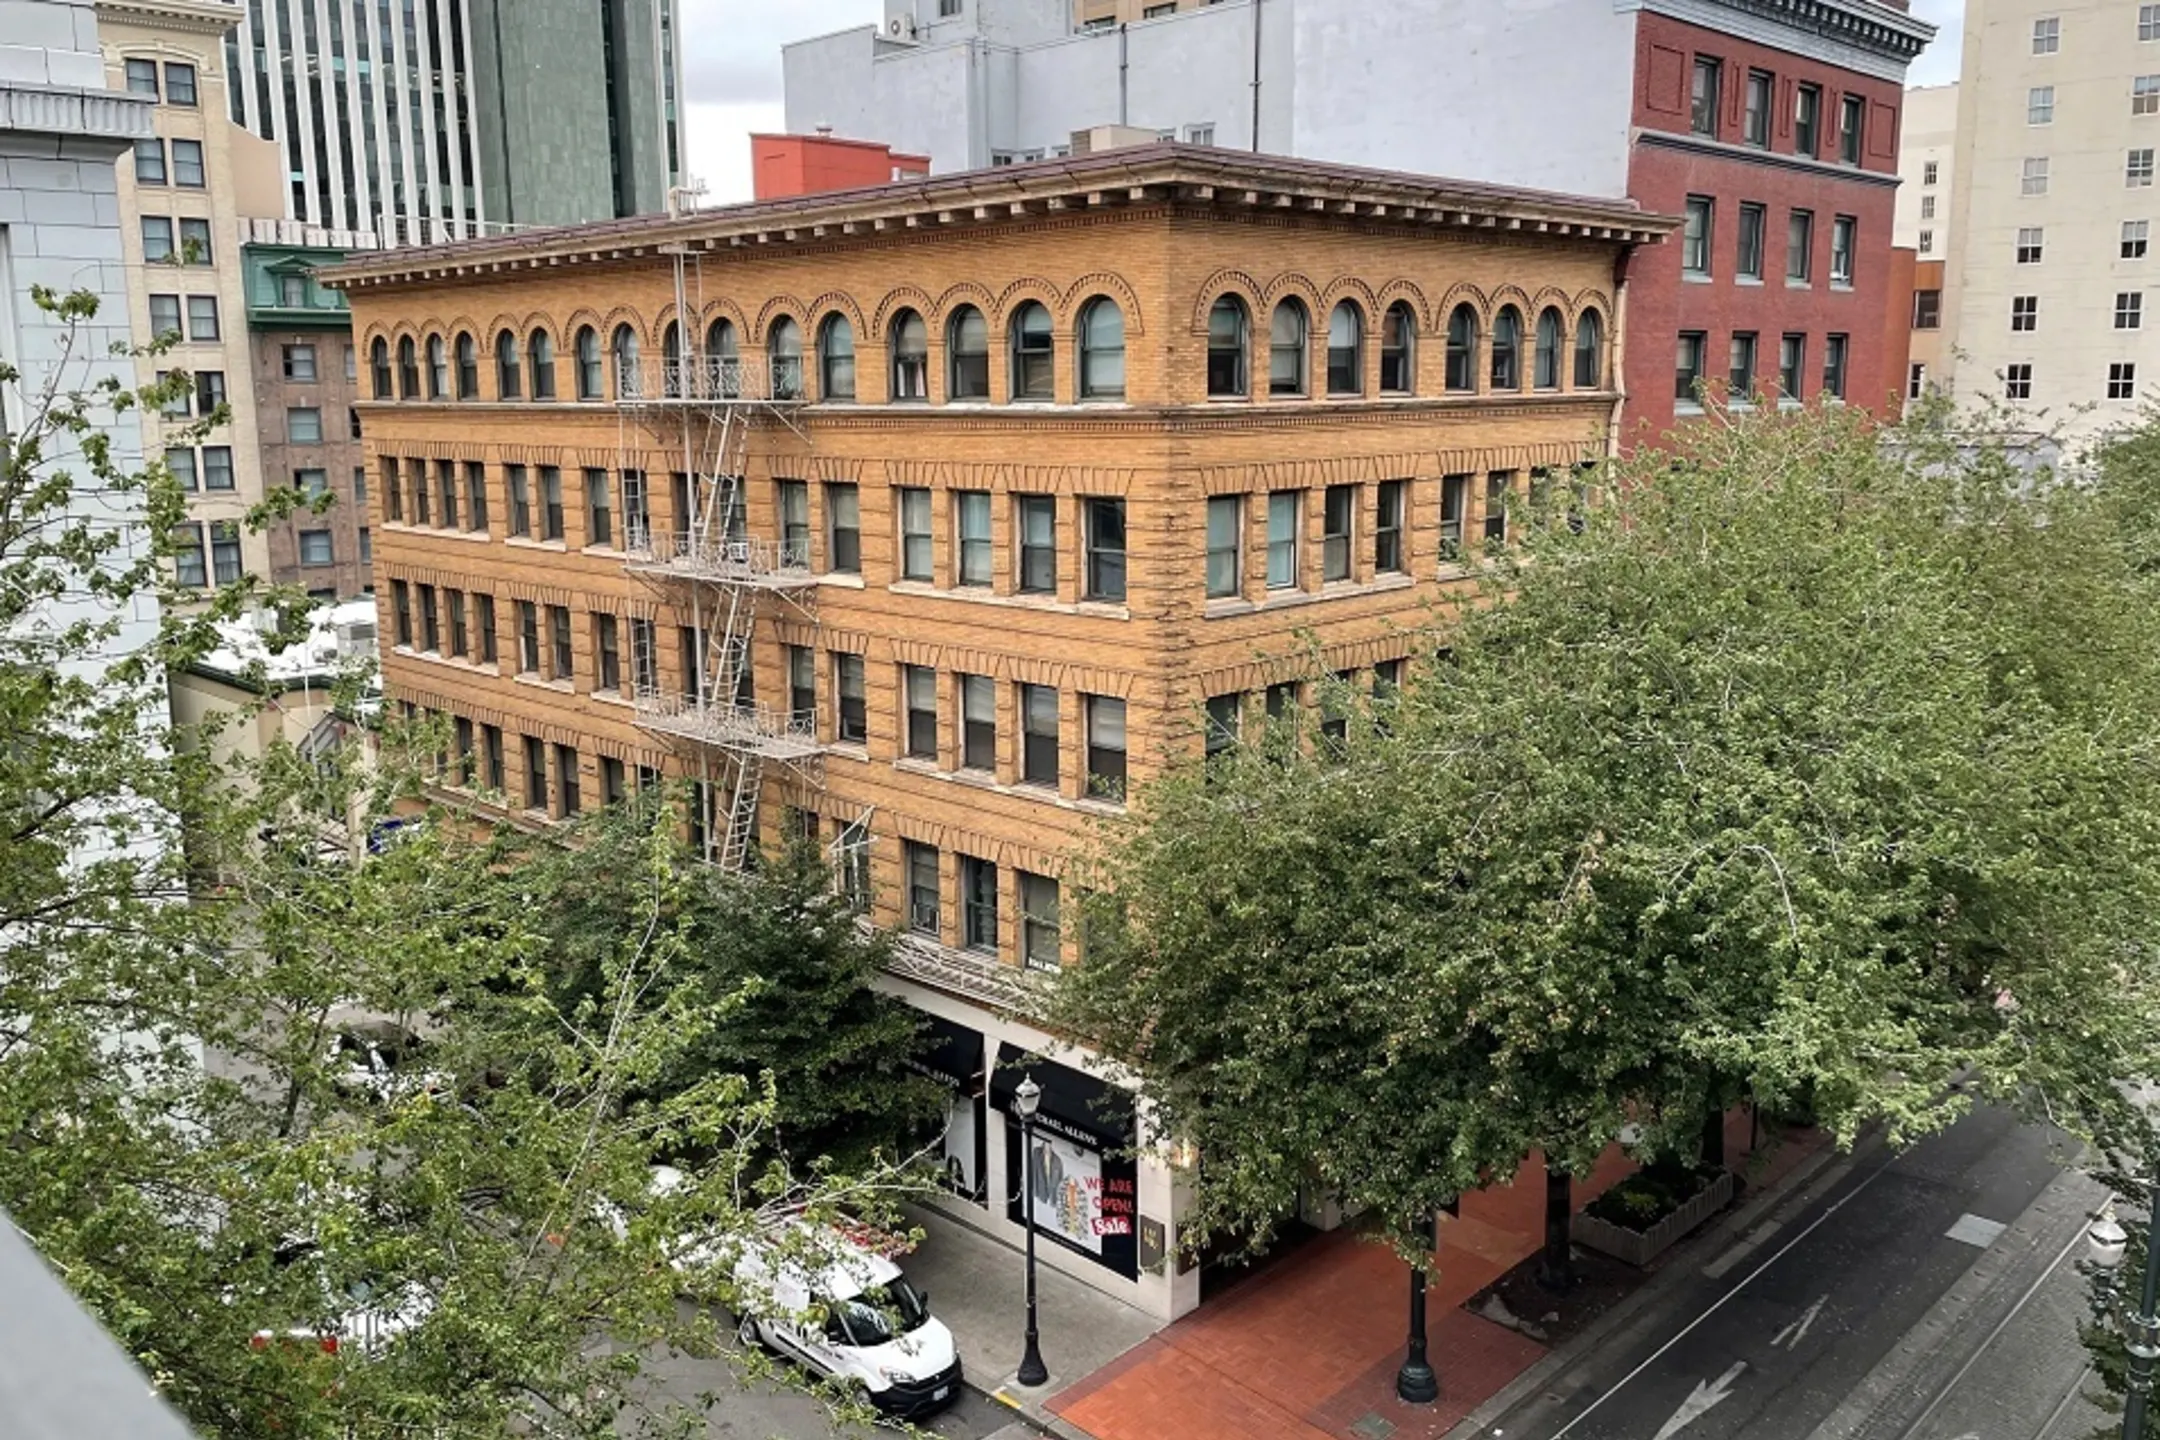 Building - Eaton Building - Portland, OR